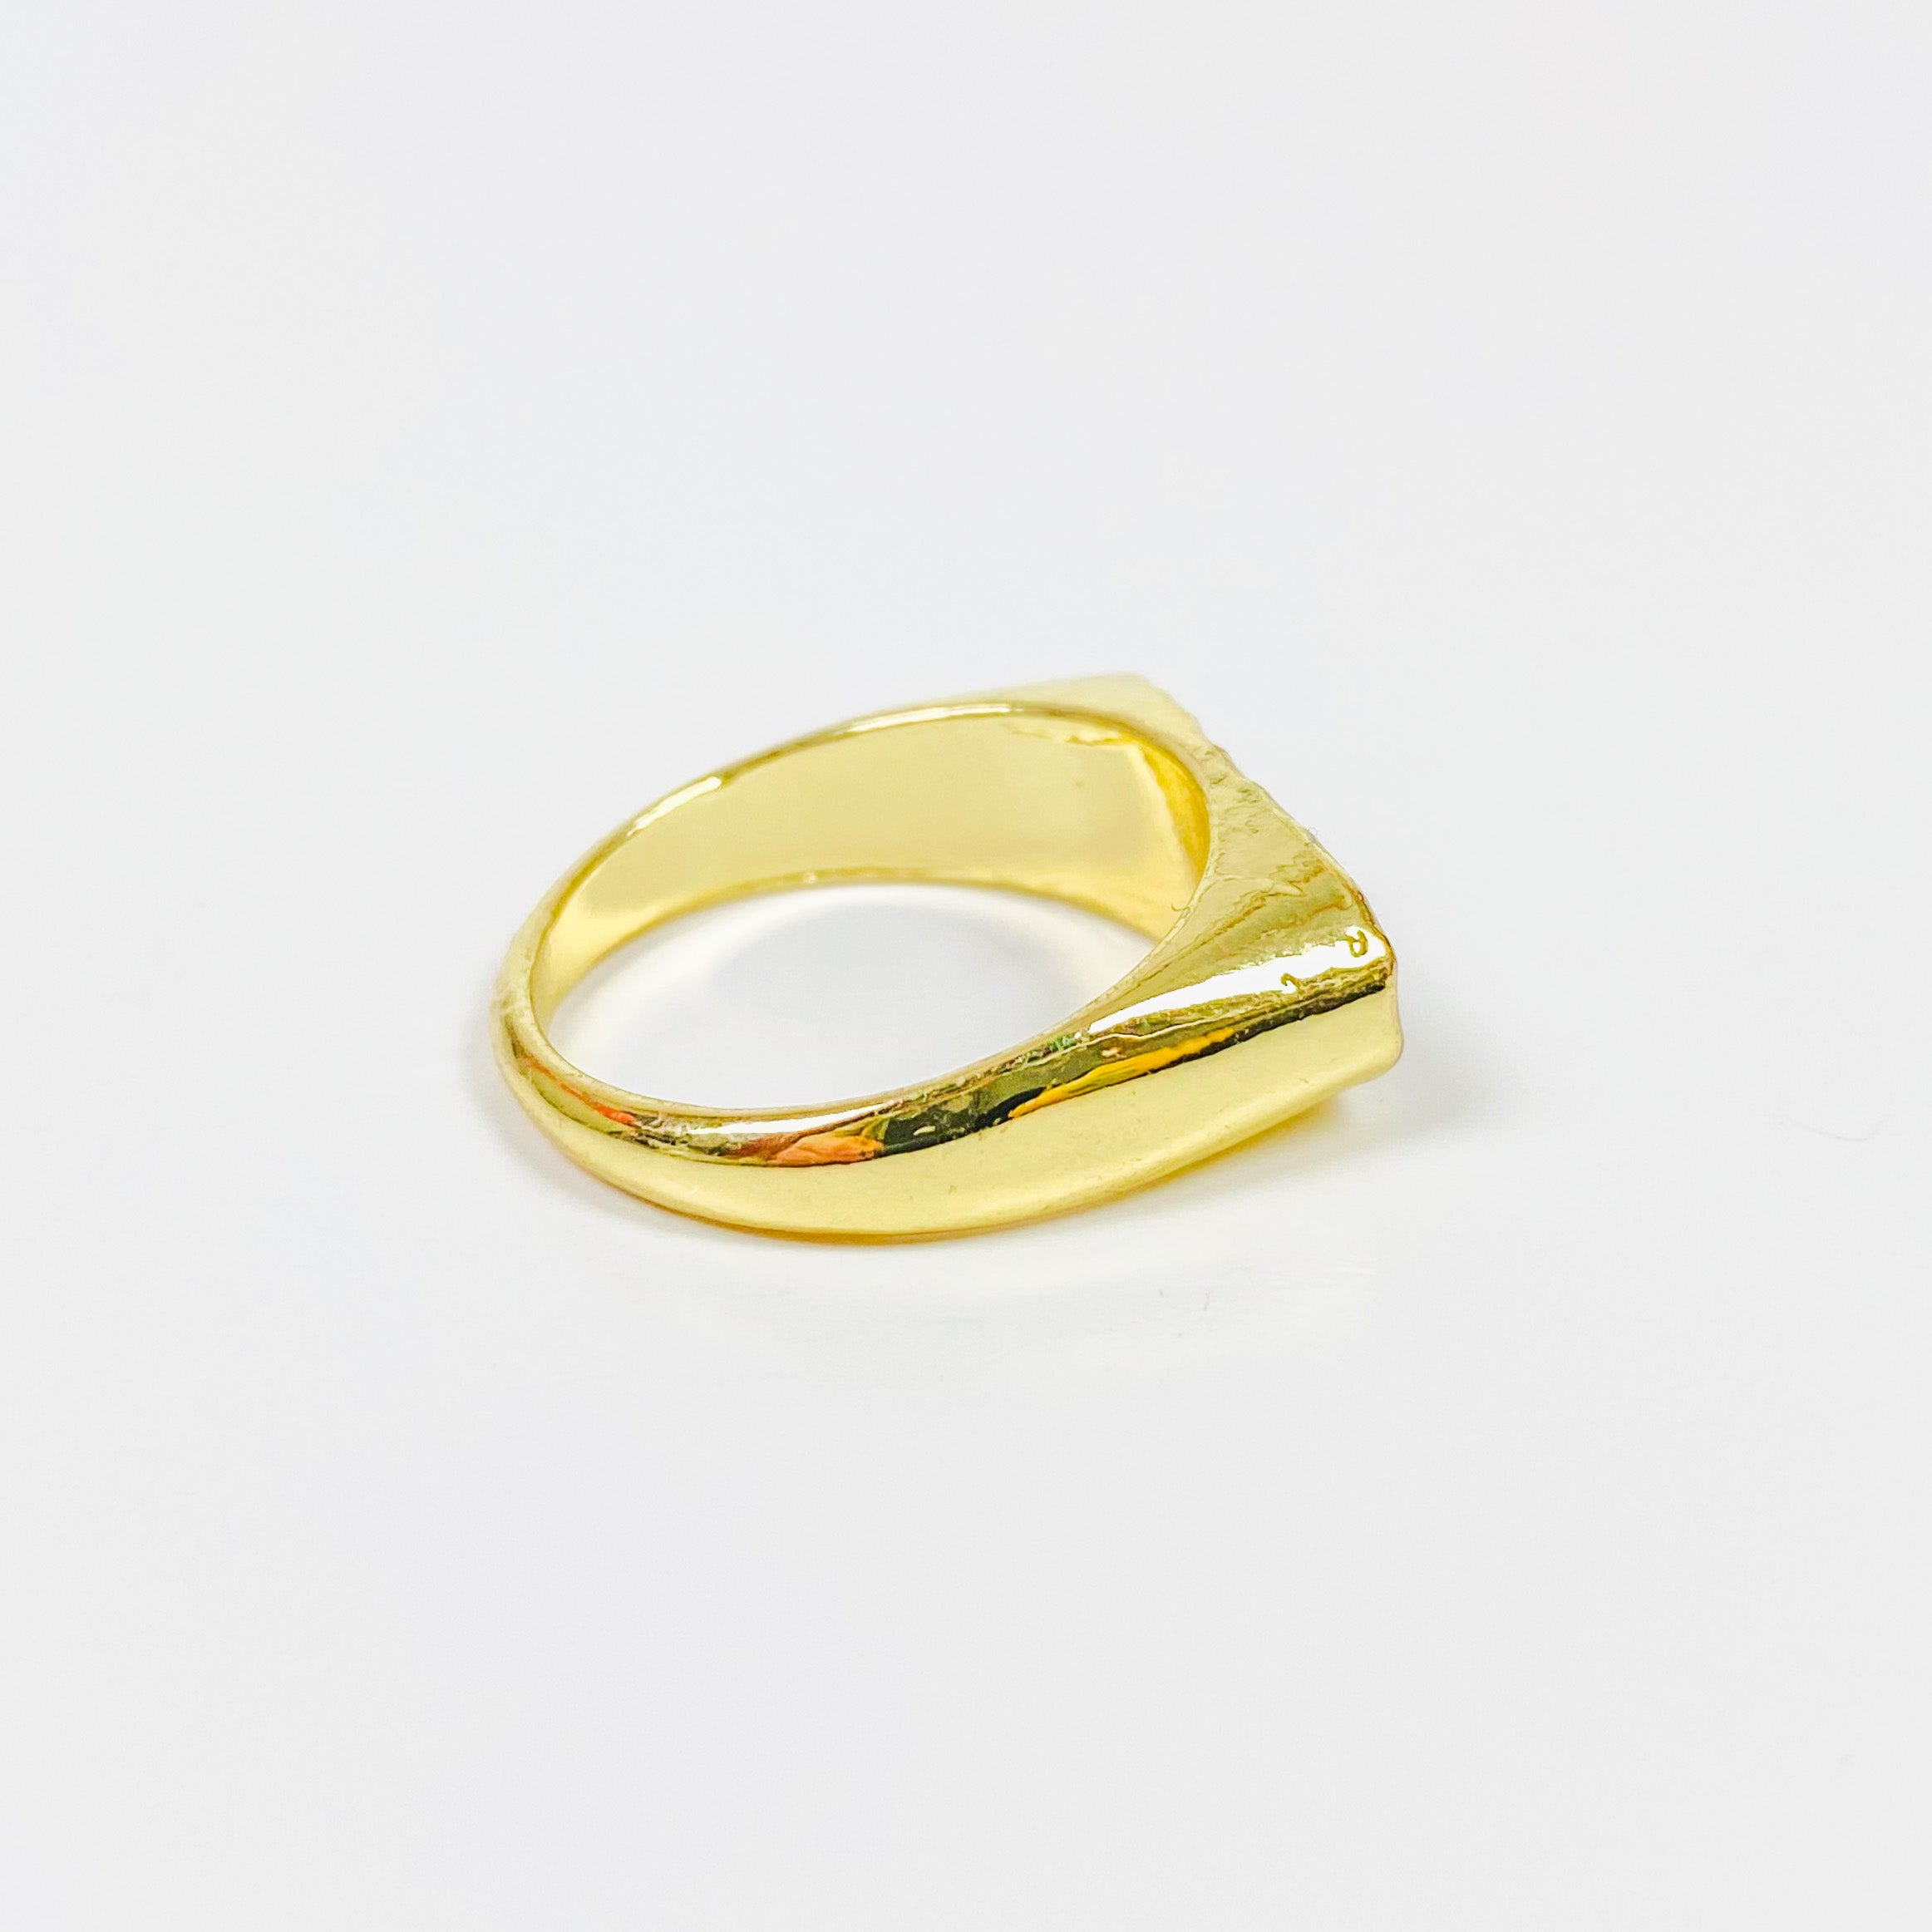 Vintage Signet Ring Gold Blue